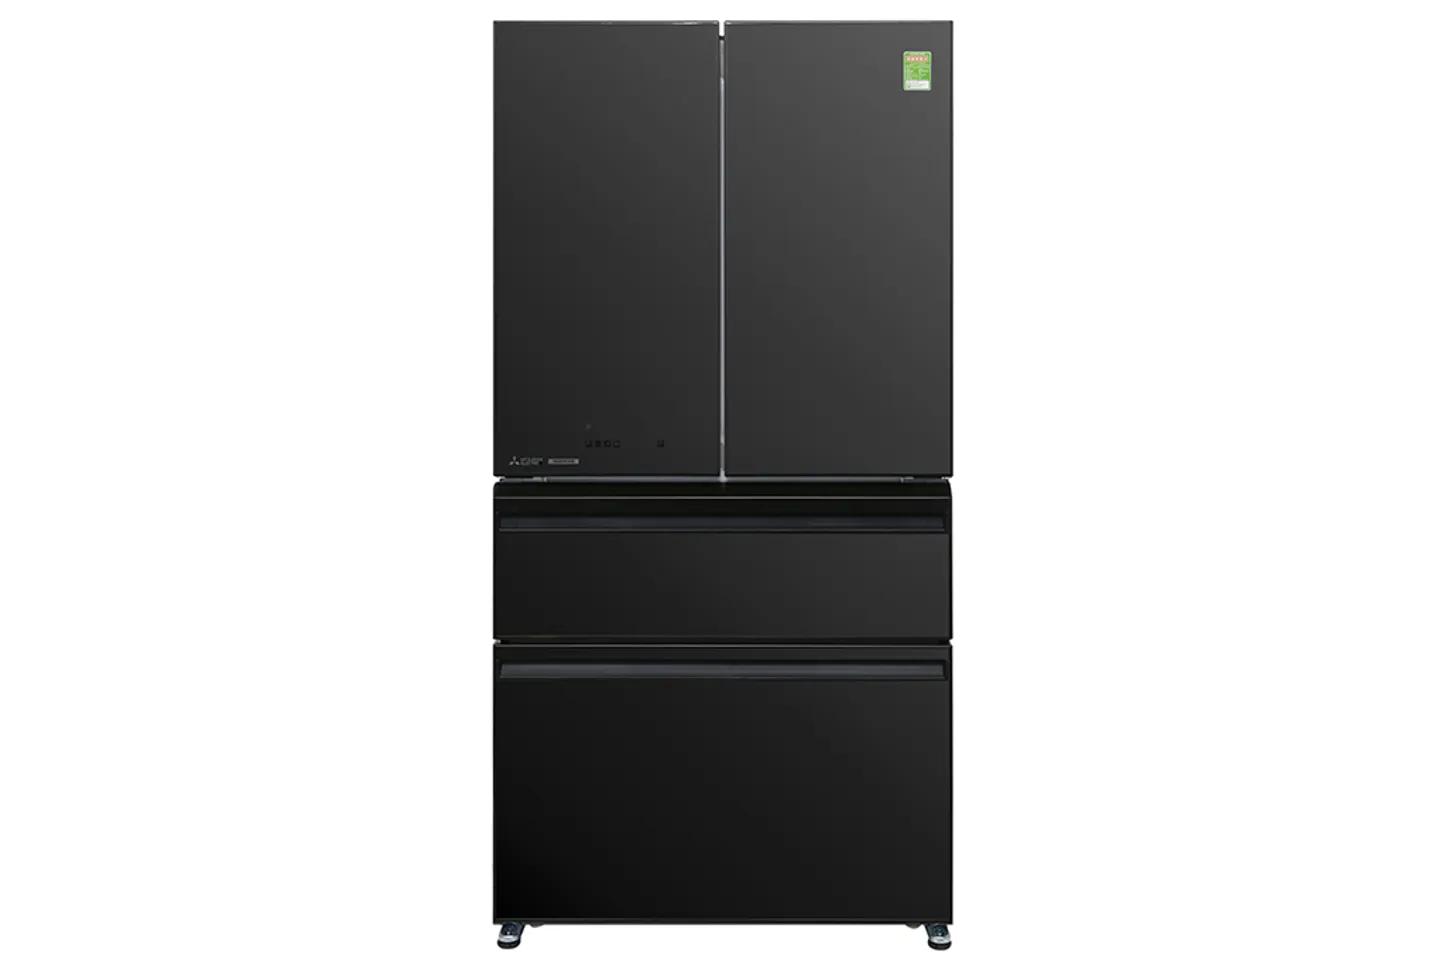 Tủ lạnh Mitsubishi MR-LX68EM-GBK-V 564 lít